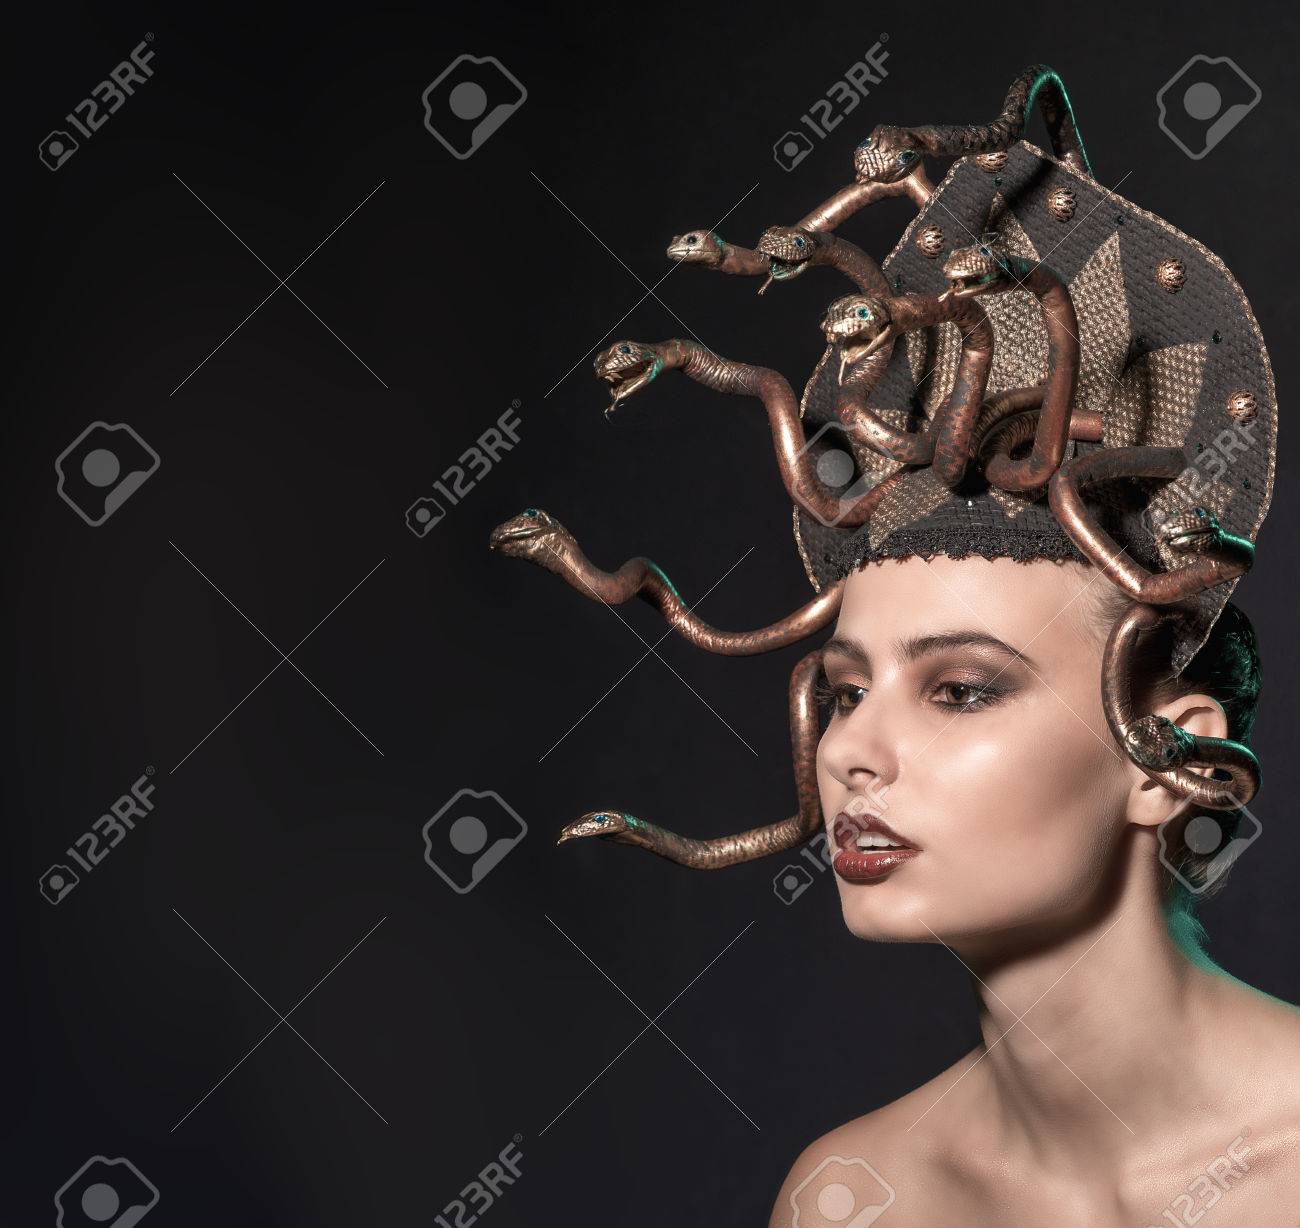 Girl Medusa Headdress Of Gold Color On A Black Background Stock